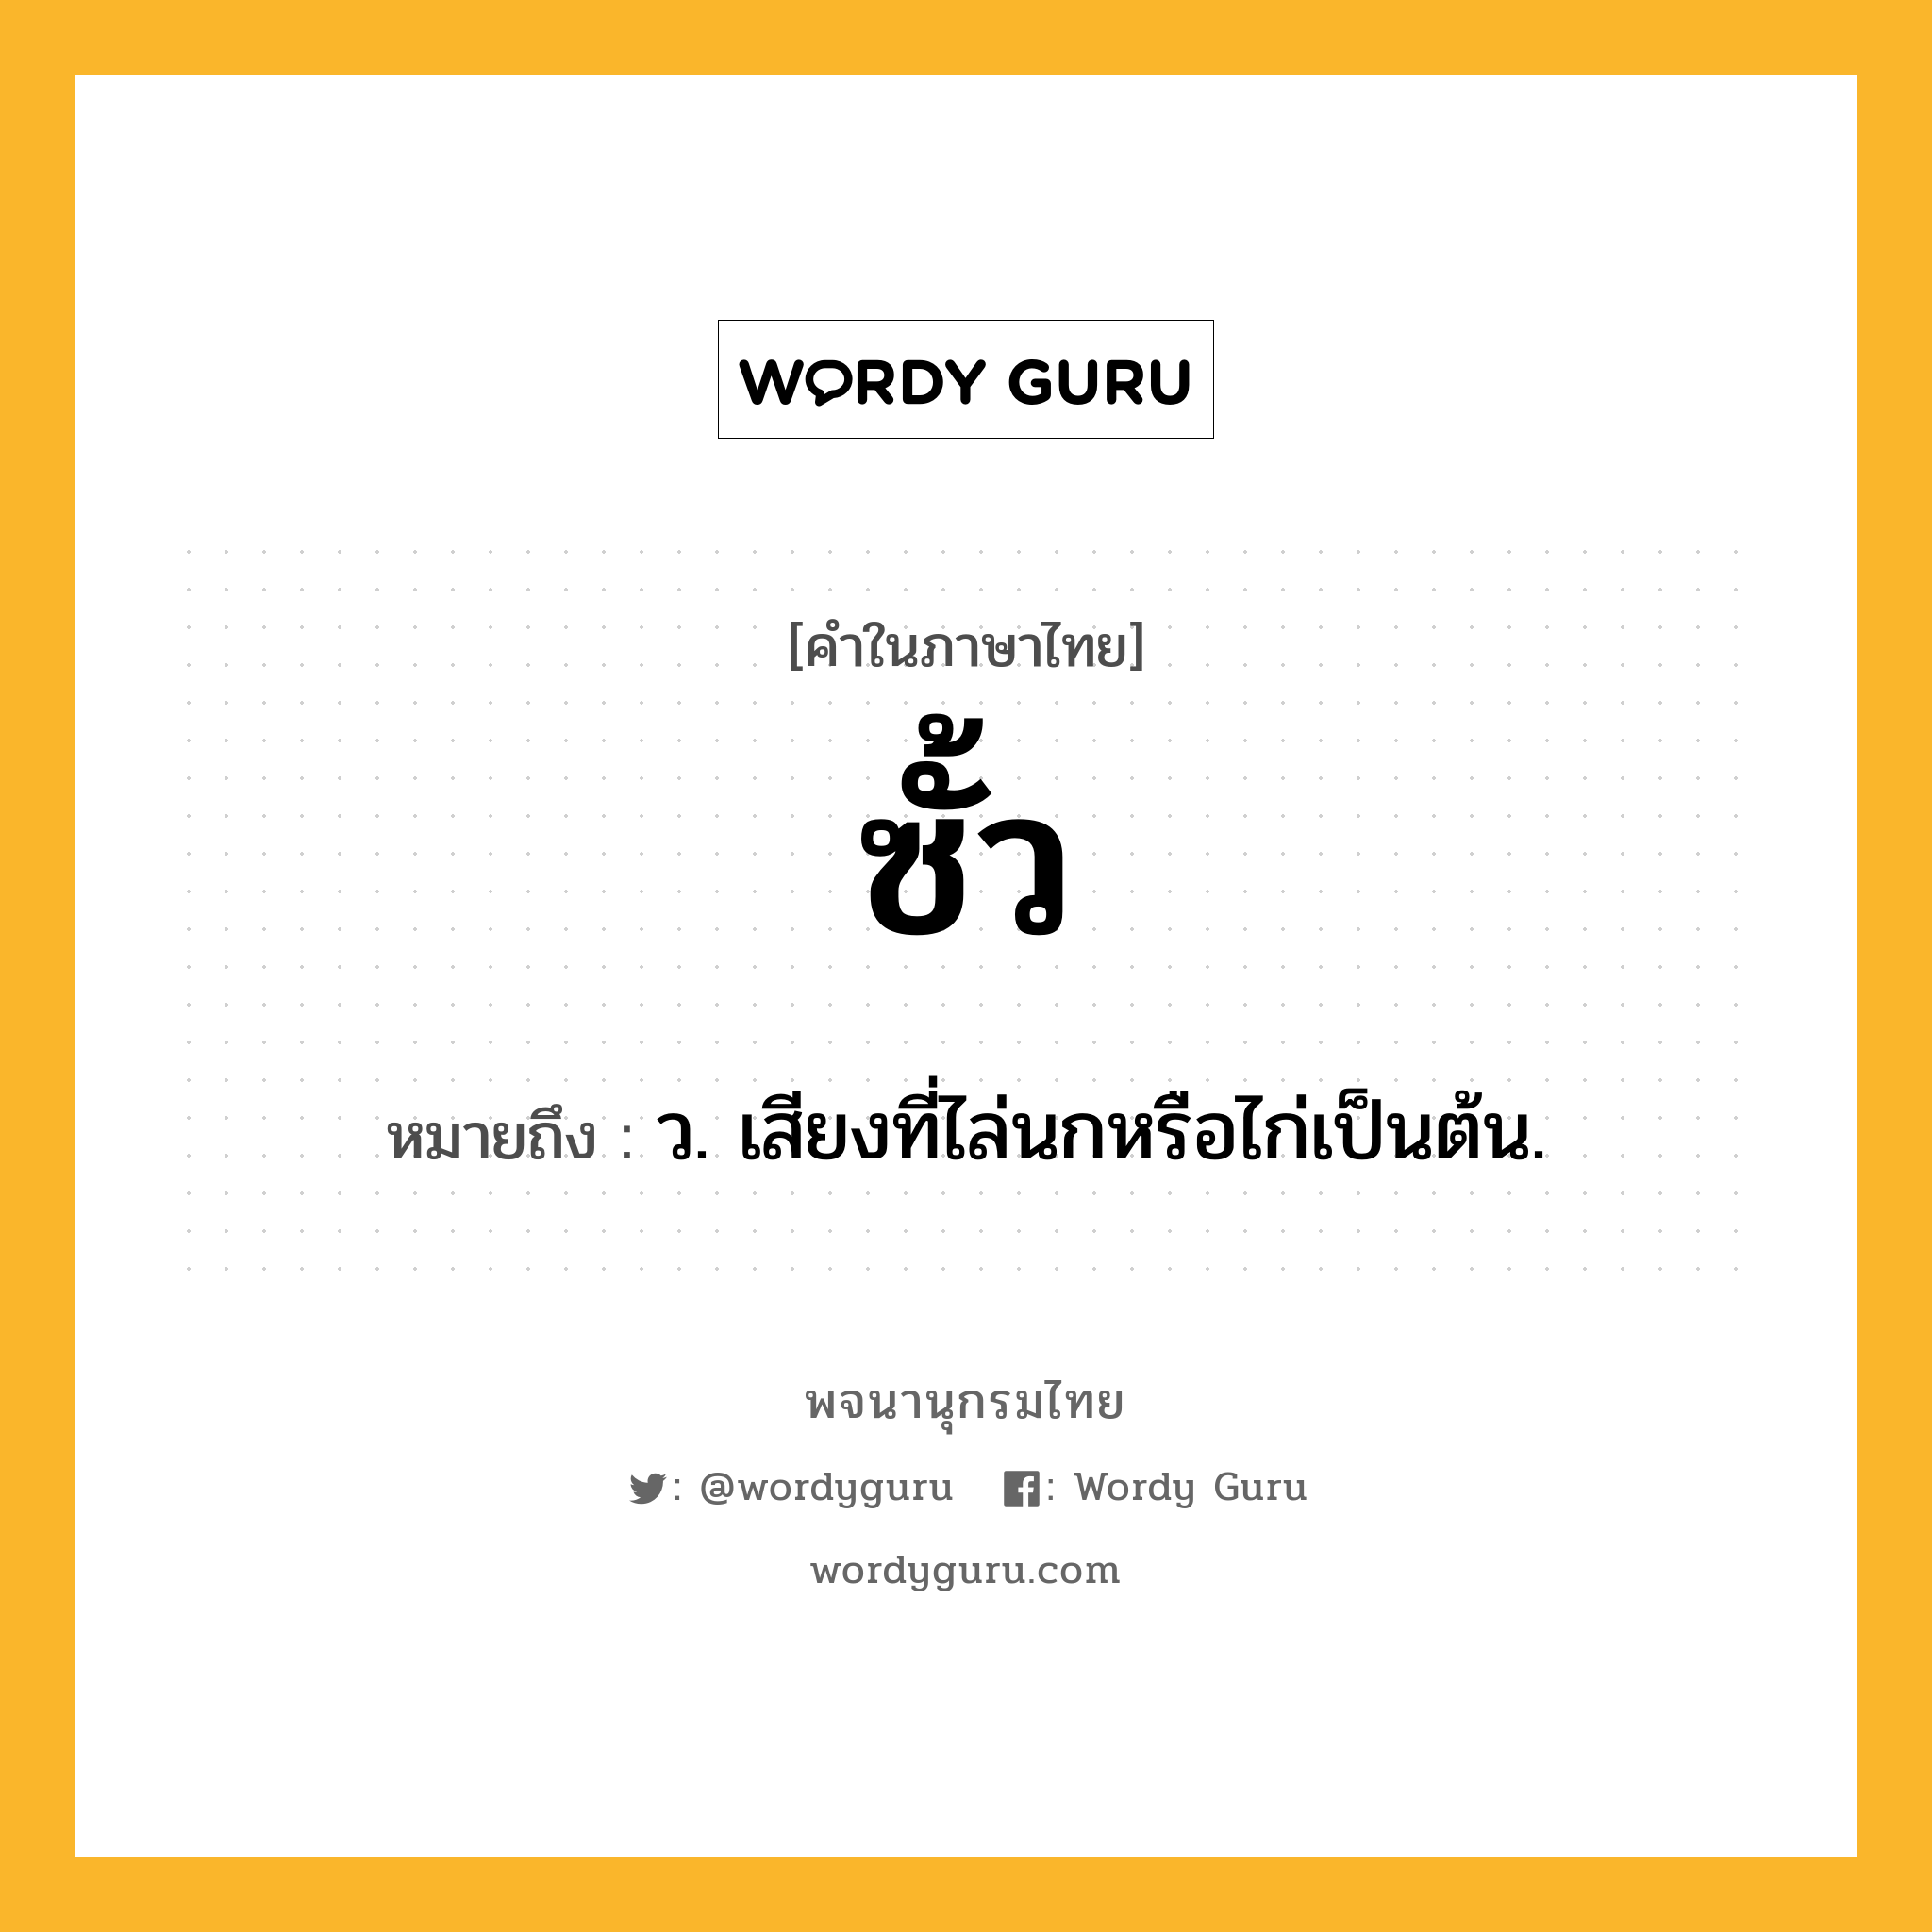 ซั้ว หมายถึงอะไร?, คำในภาษาไทย ซั้ว หมายถึง ว. เสียงที่ไล่นกหรือไก่เป็นต้น.